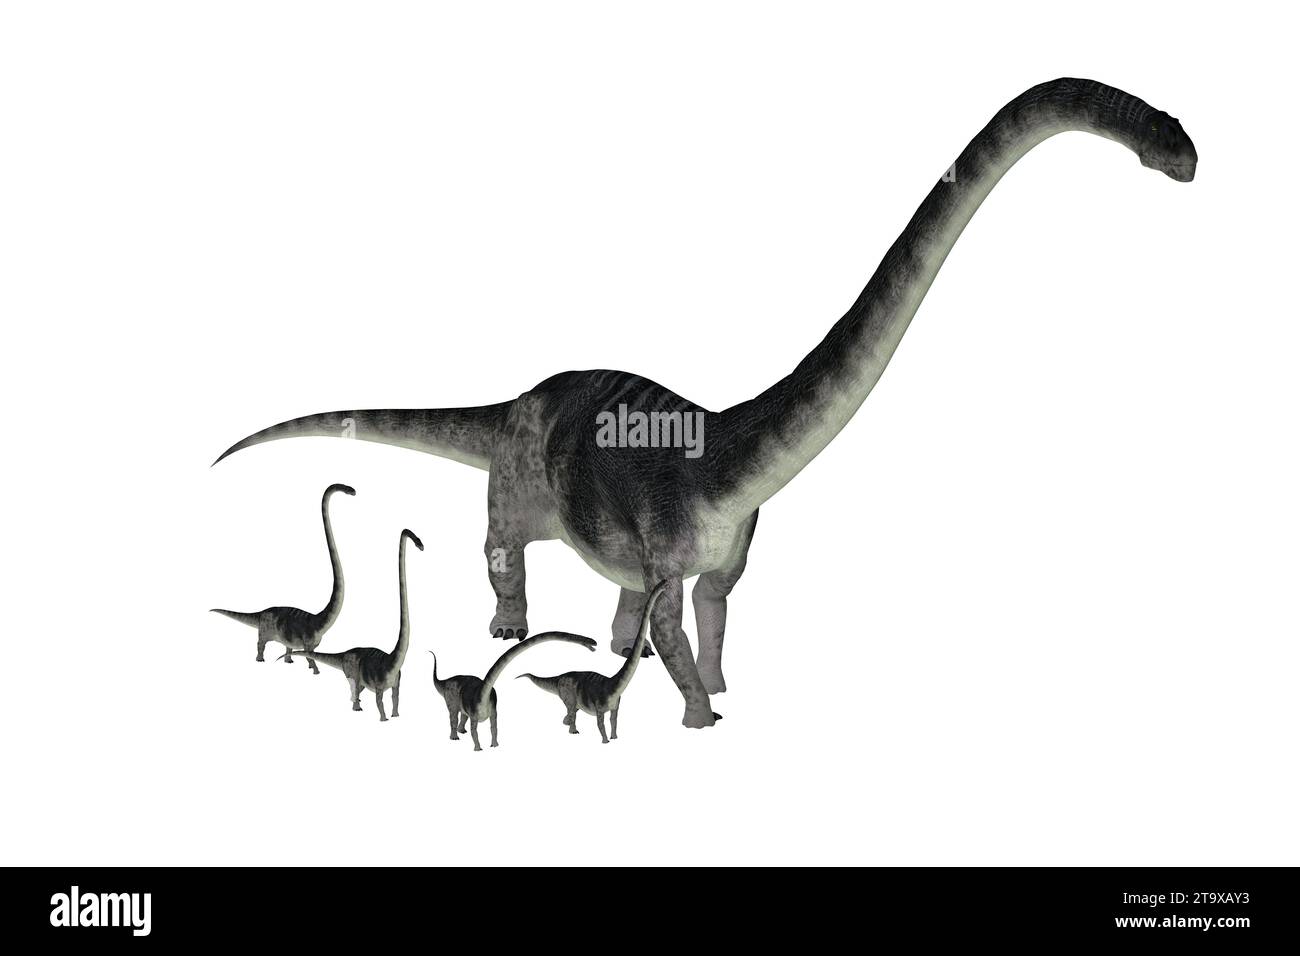 Omeisaurus war ein Pflanzenfressenden sauropoden Dinosaurier, die in der Volksrepublik China während der Kreidezeit lebten. Stockfoto